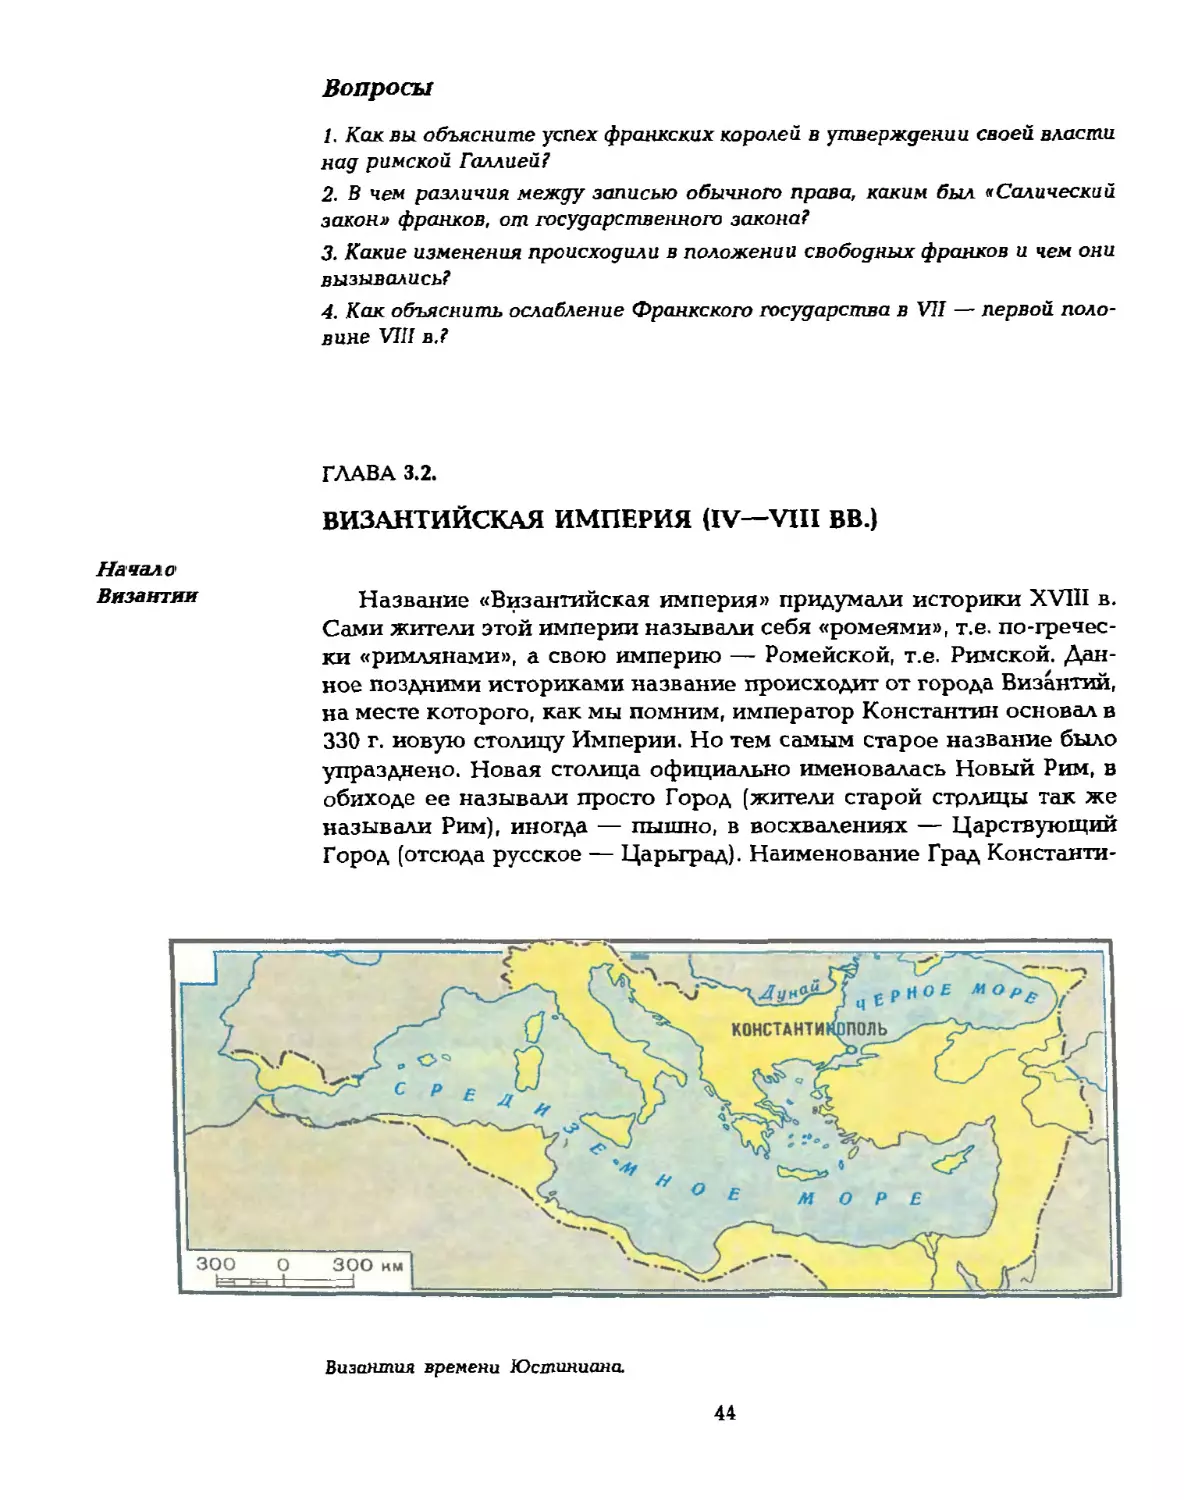 Глава 3.2. Византийская империя (IV—VIII вв.)